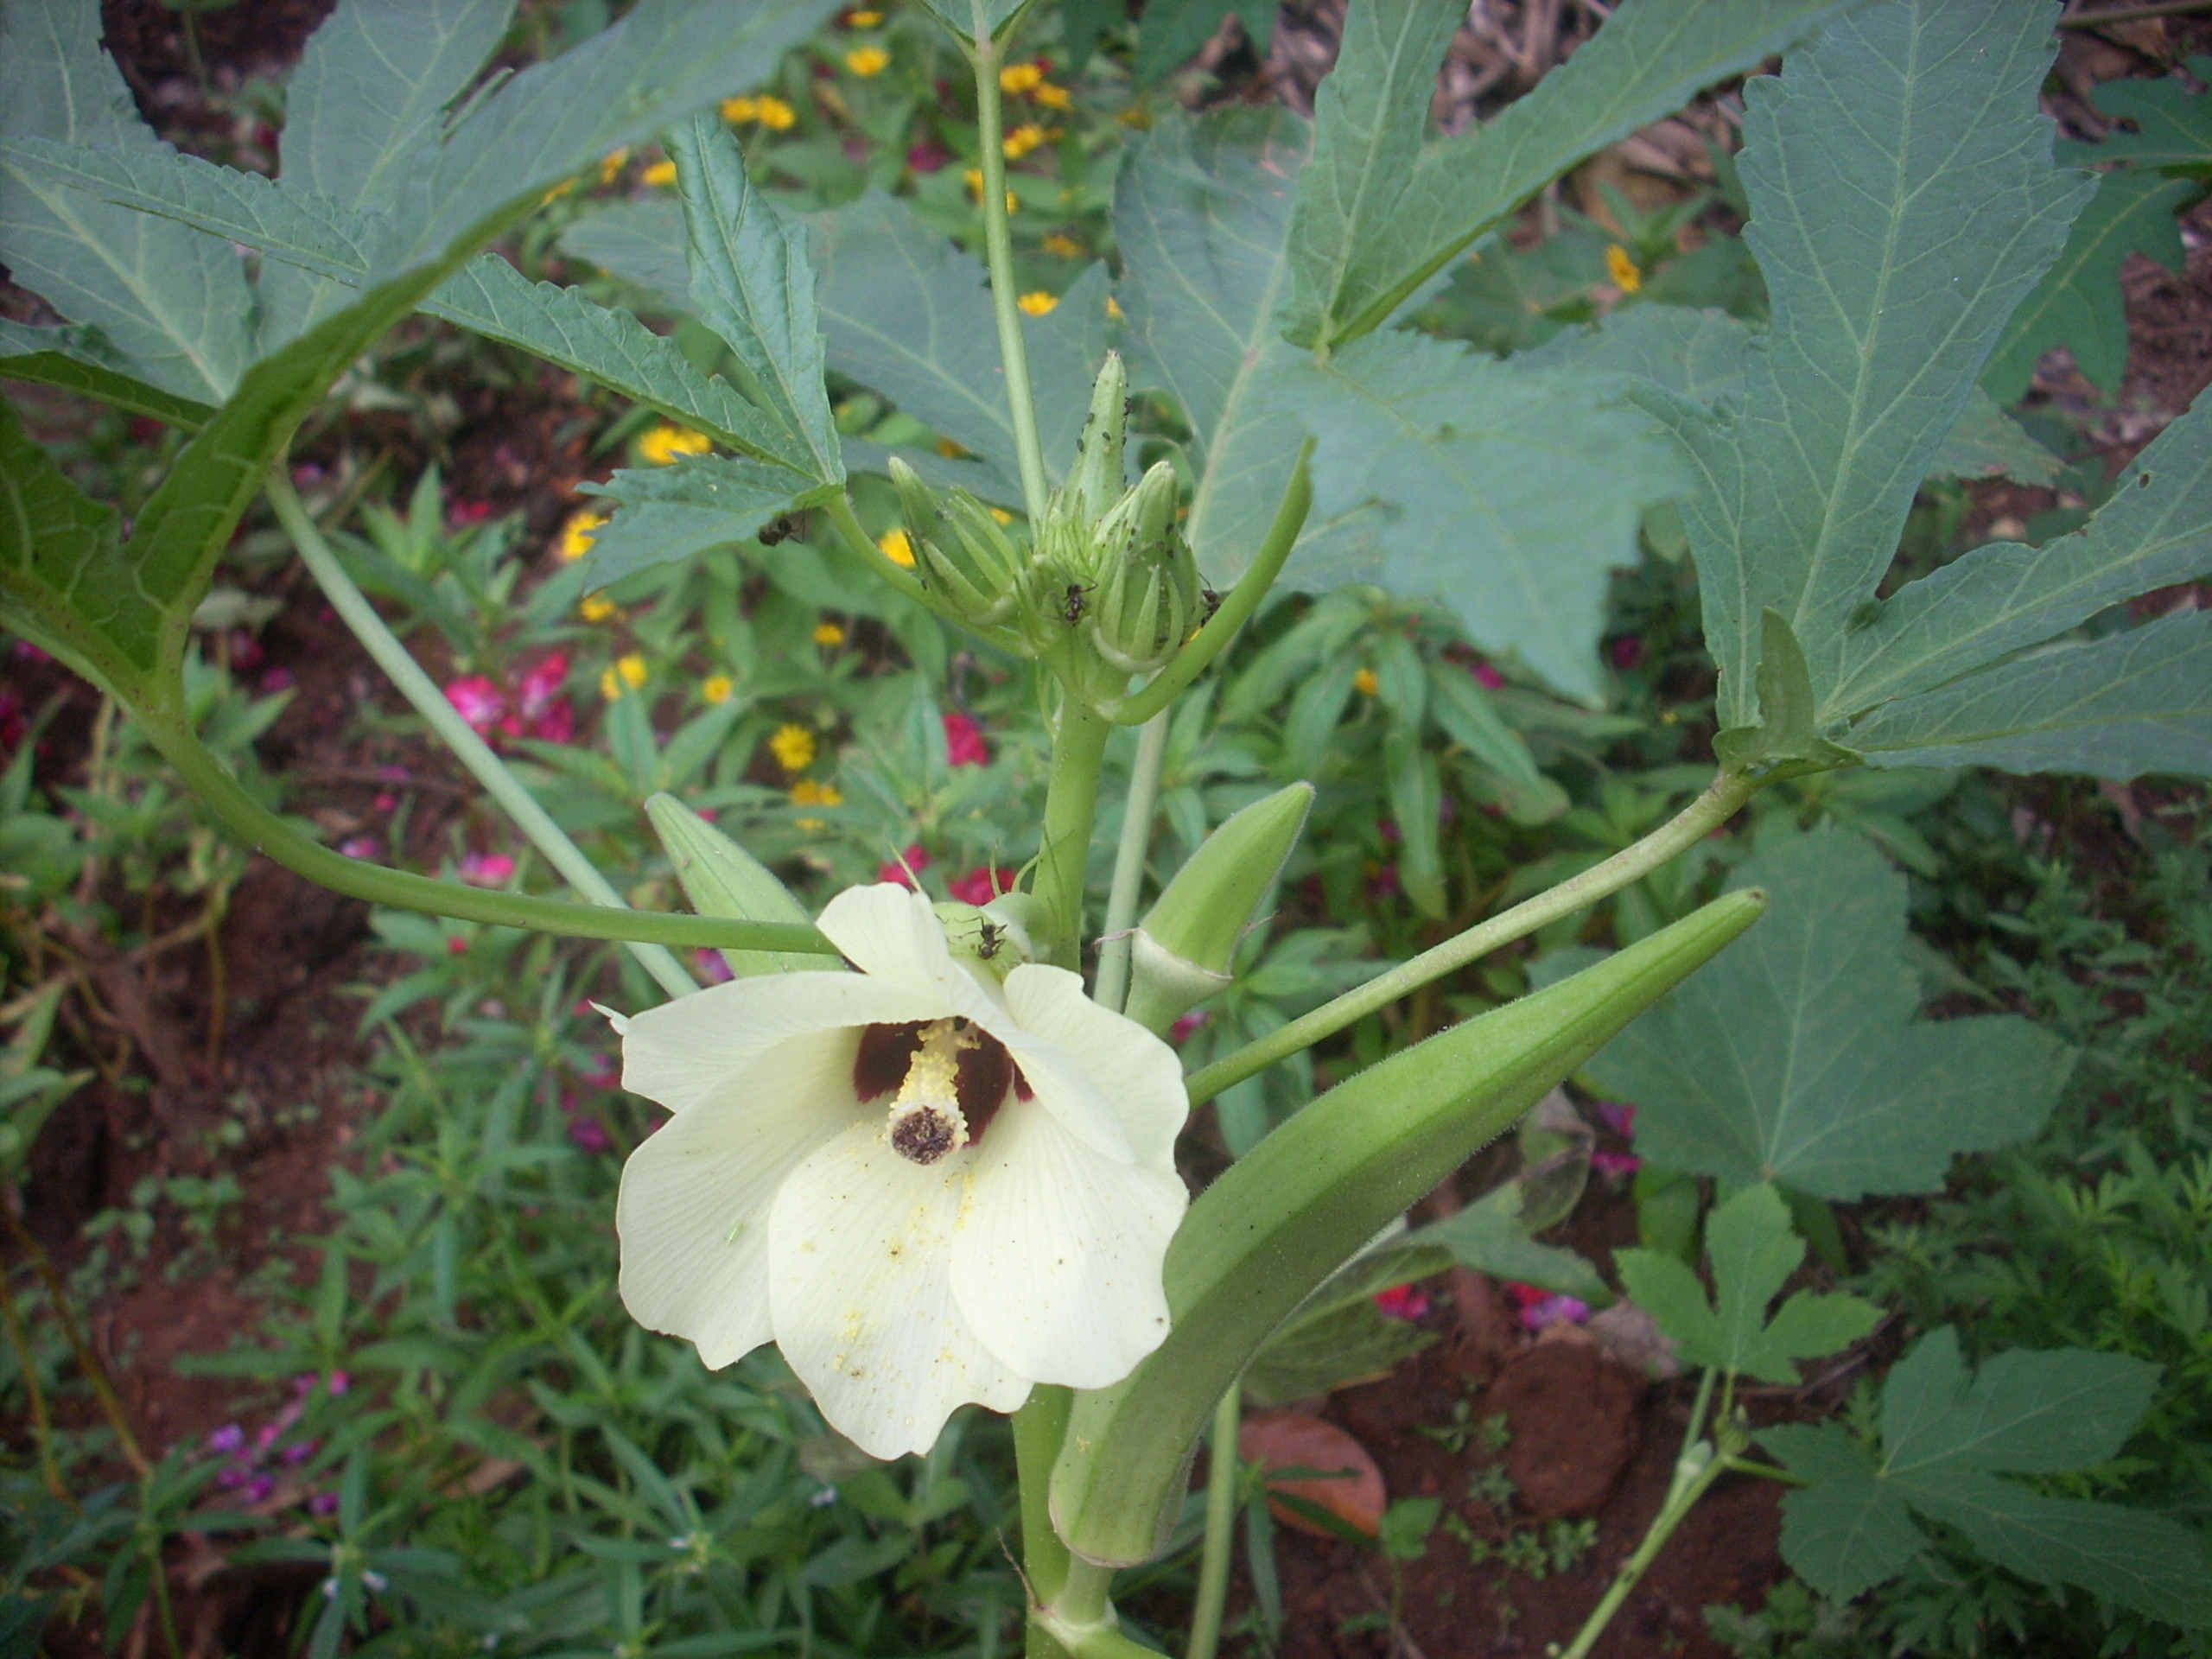 File:Okra flower.JPG - Wikimedia Commons